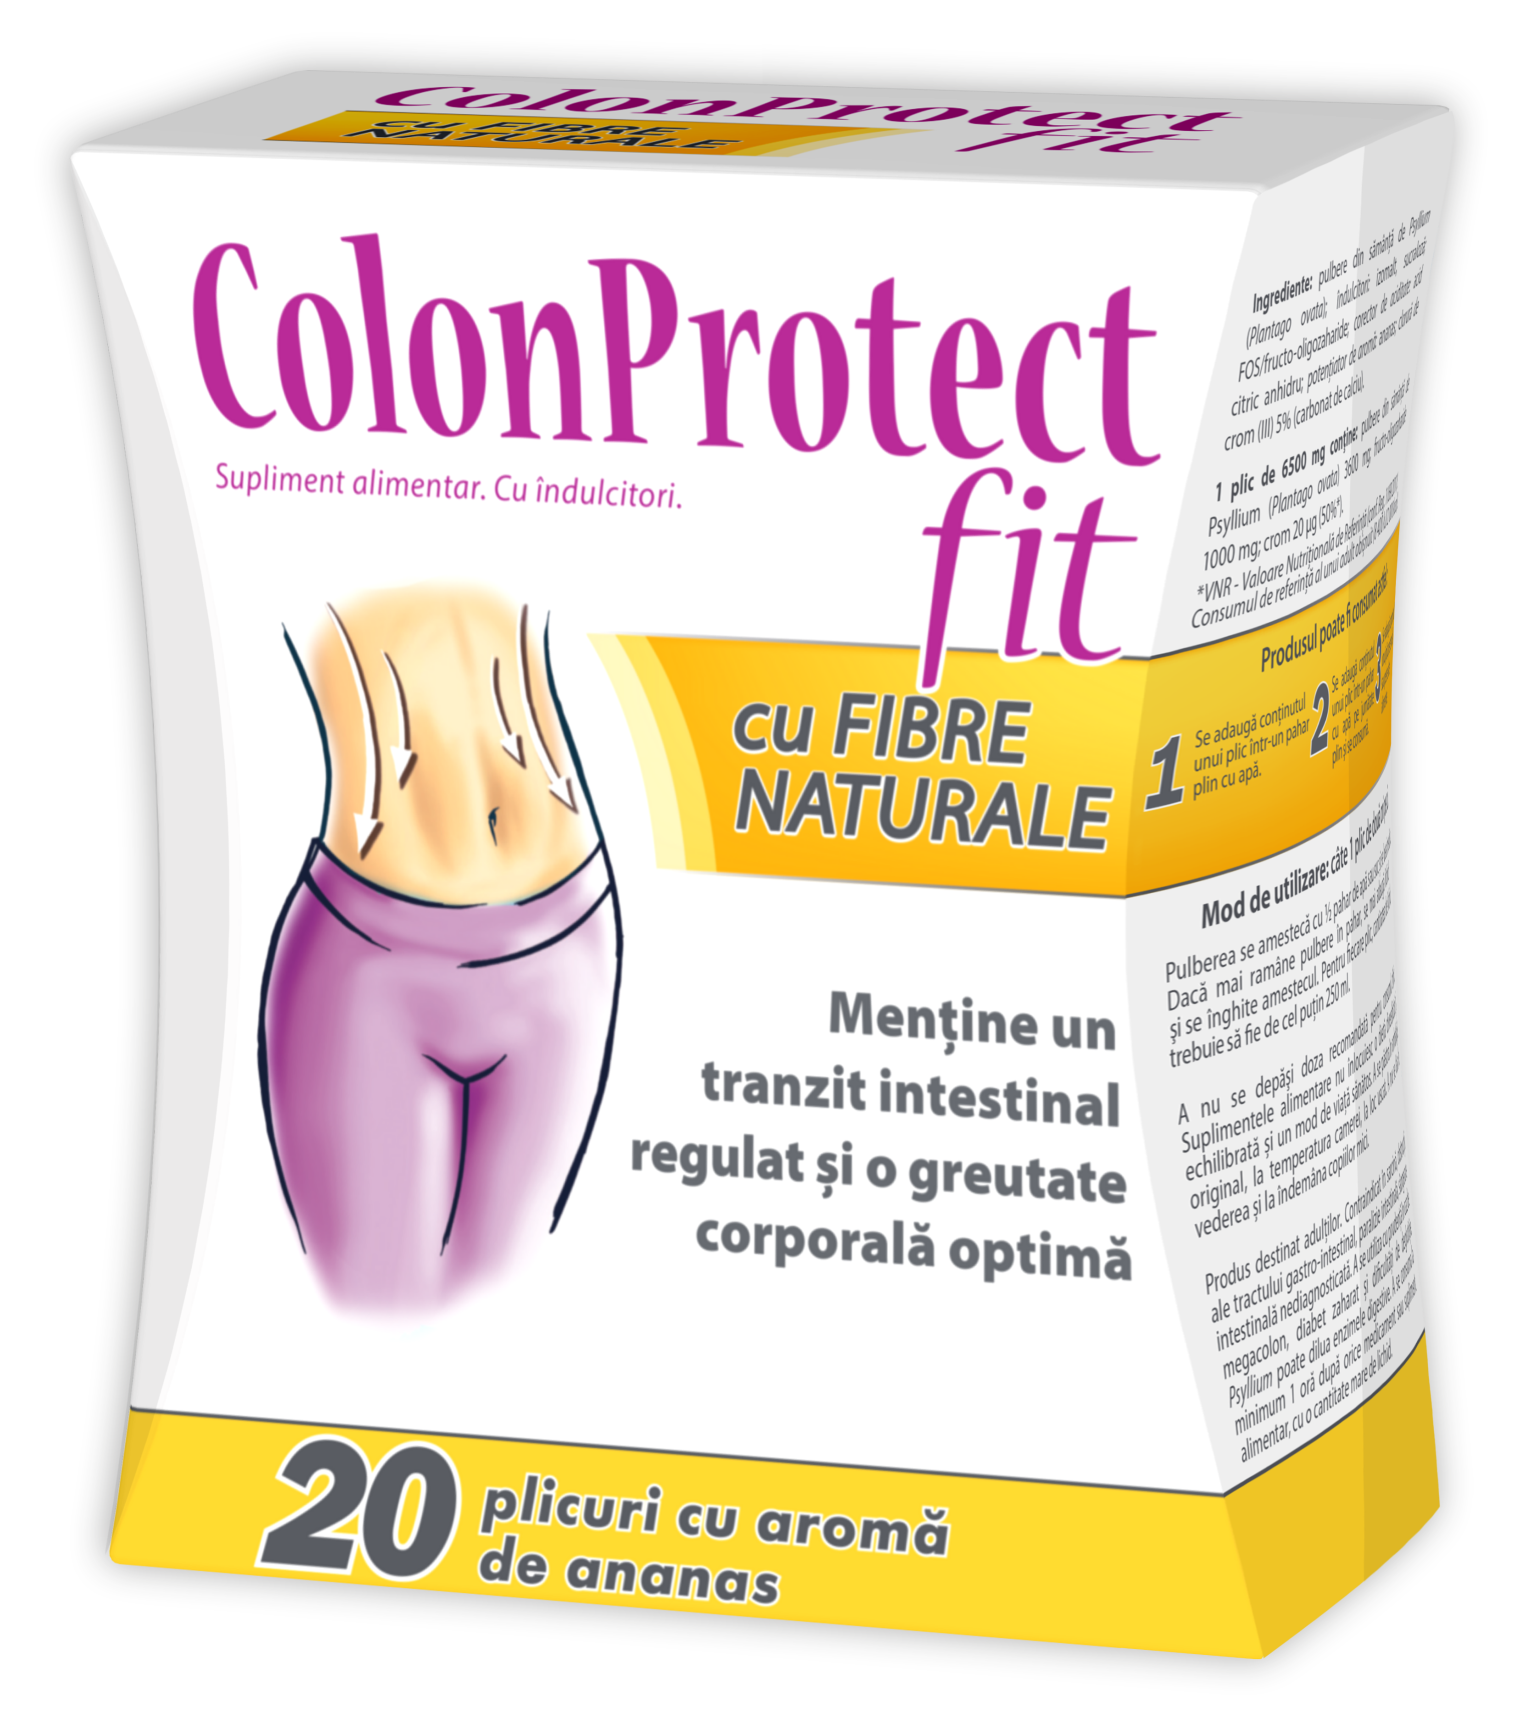 Pareri ColonProtect FIT supliment slabire pretul tranzitului intestinal regulat. Prospect.